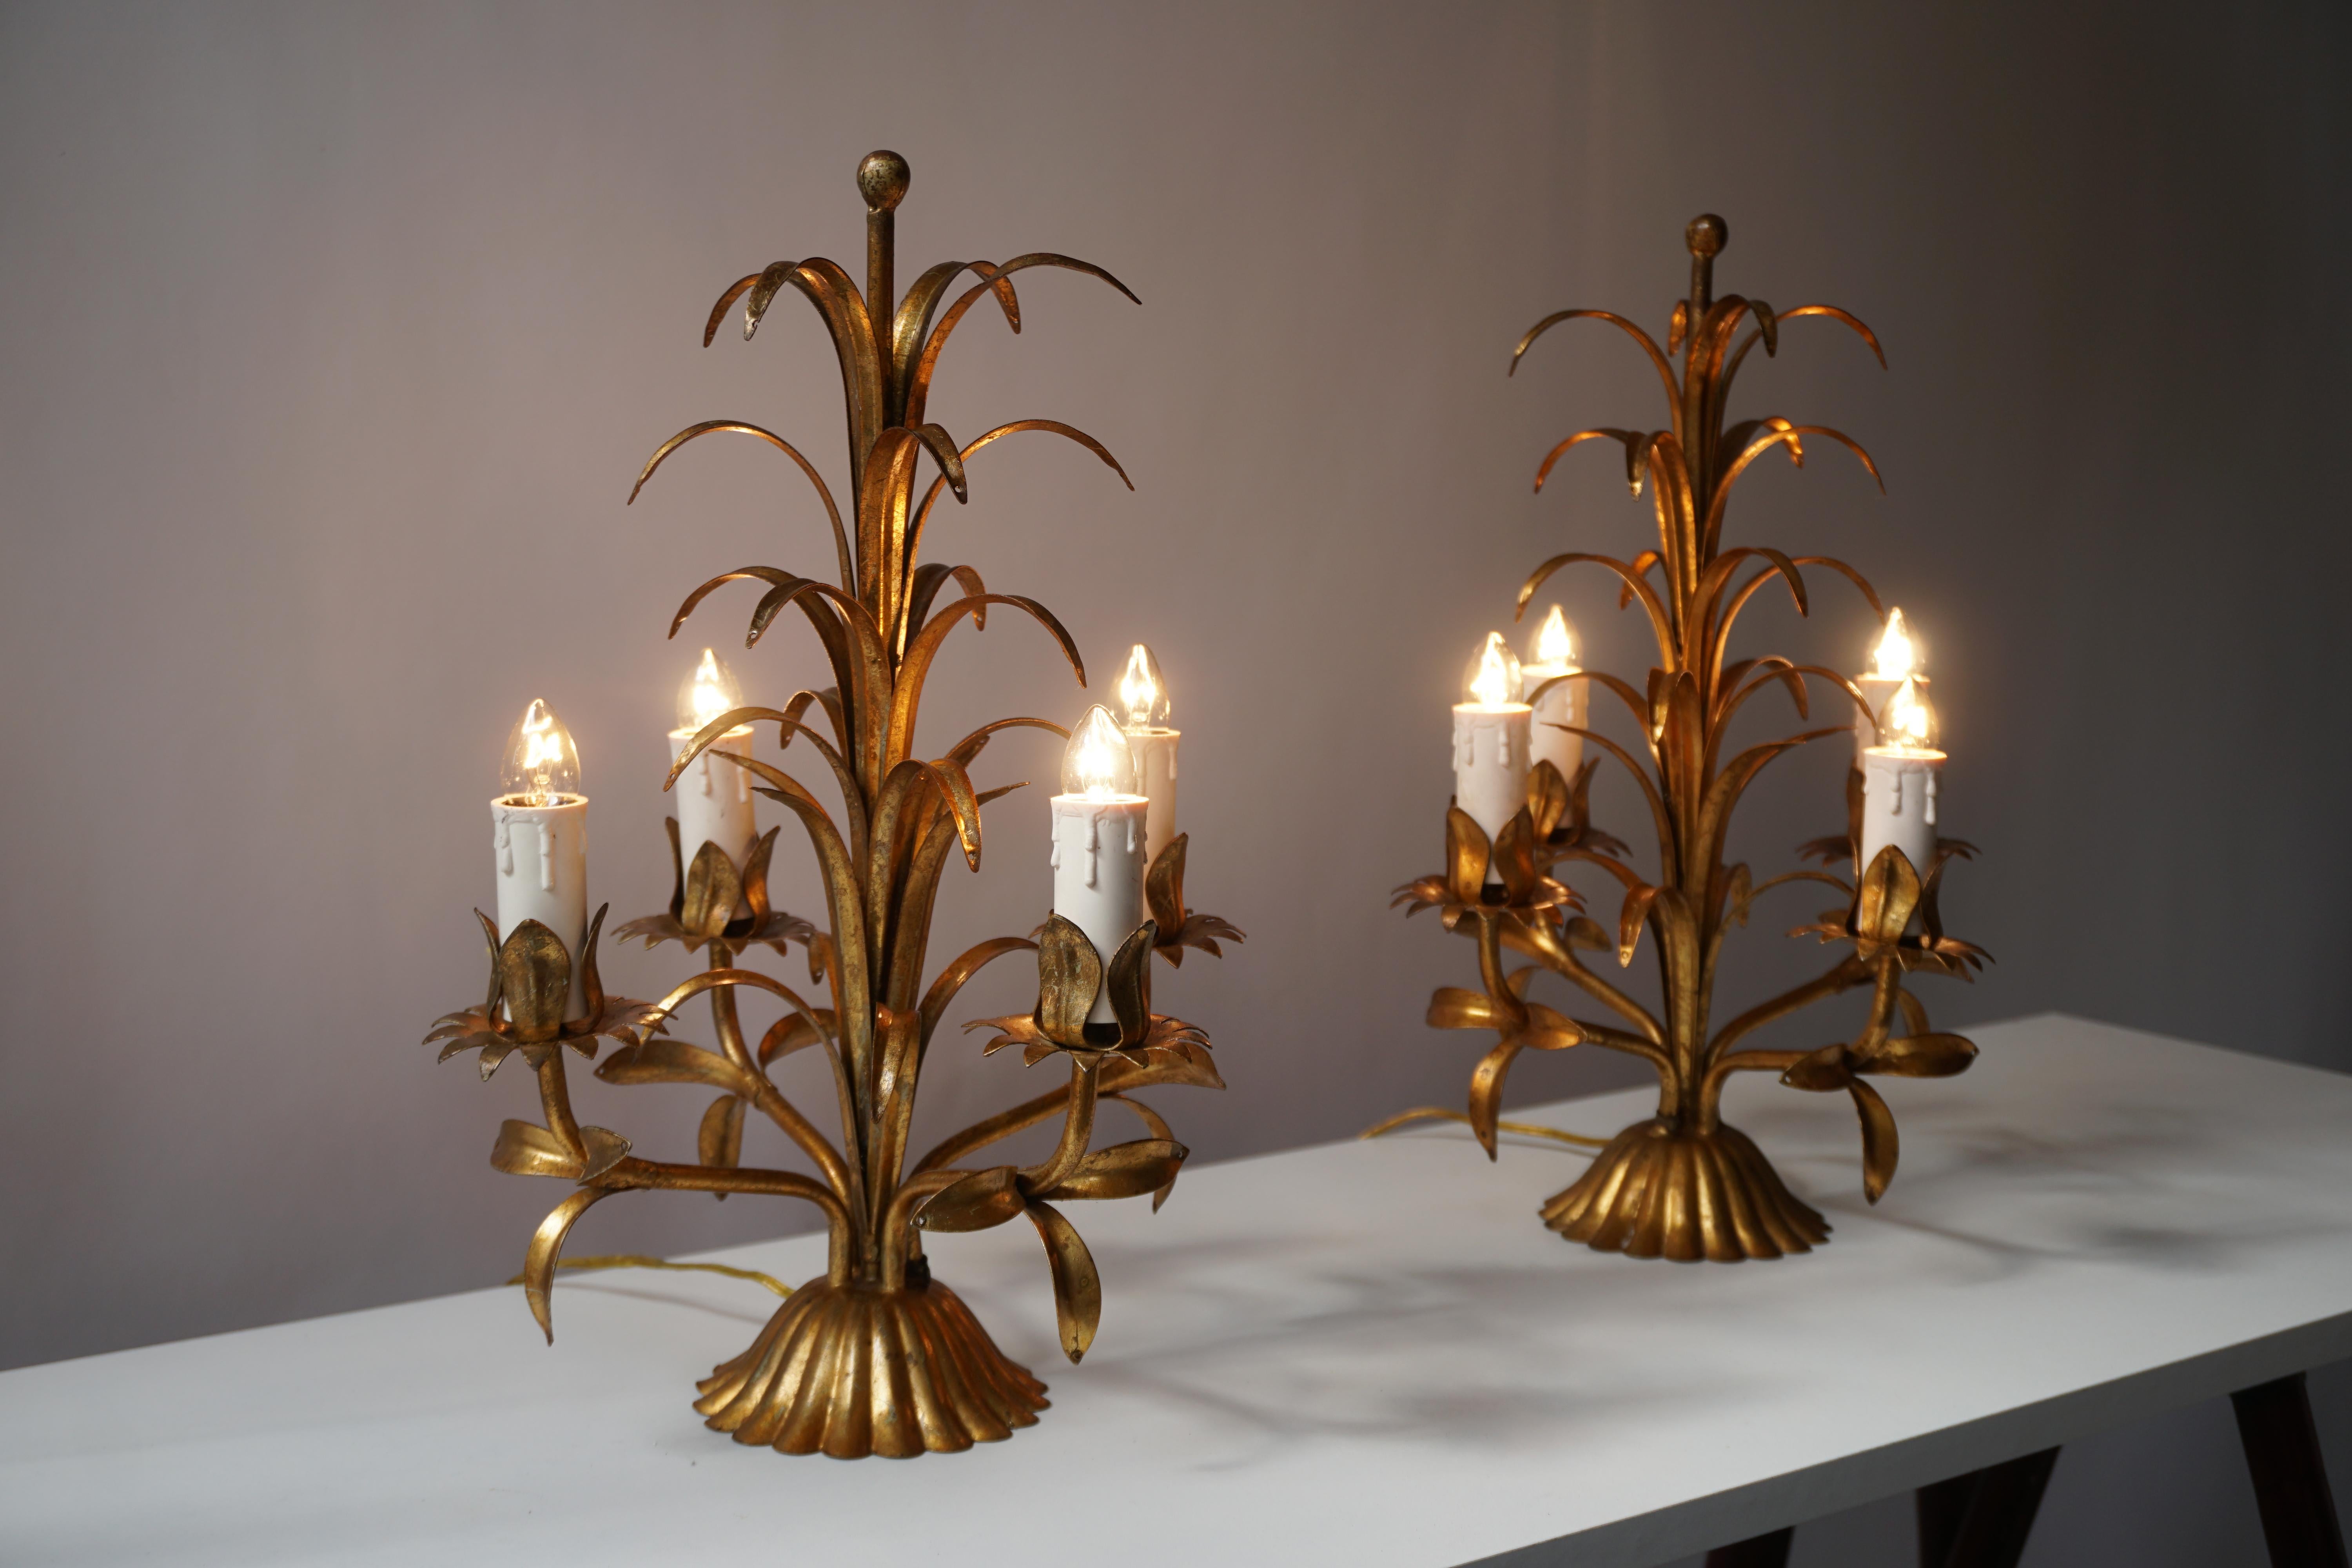 Deux rares lampes de table italiennes dorées en forme de palmier, années 1970.
Chaque lampe nécessite quatre ampoules à vis E14 (40Watt max.) compatibles avec les LED.

Hauteur 40 cm.
Diamètre 30 cm.

